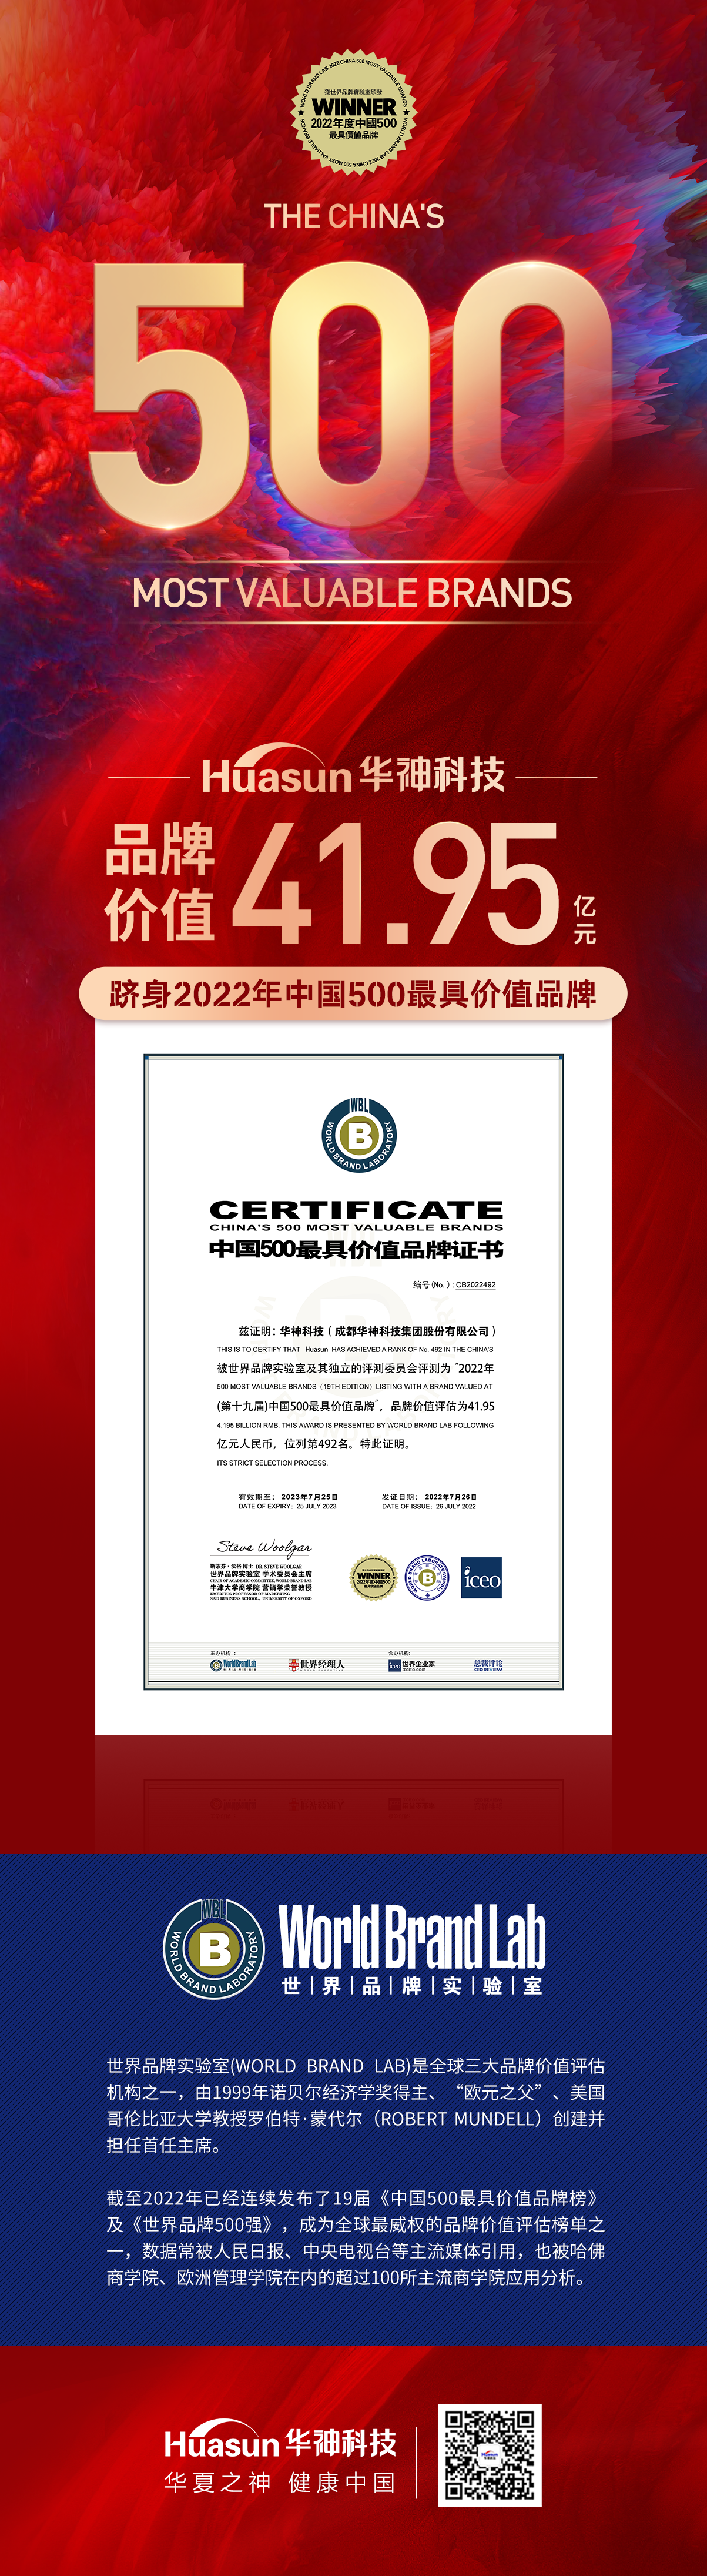 重磅 | 华神科技首次荣膺中国500最具价值品牌 品牌价值达41.95亿